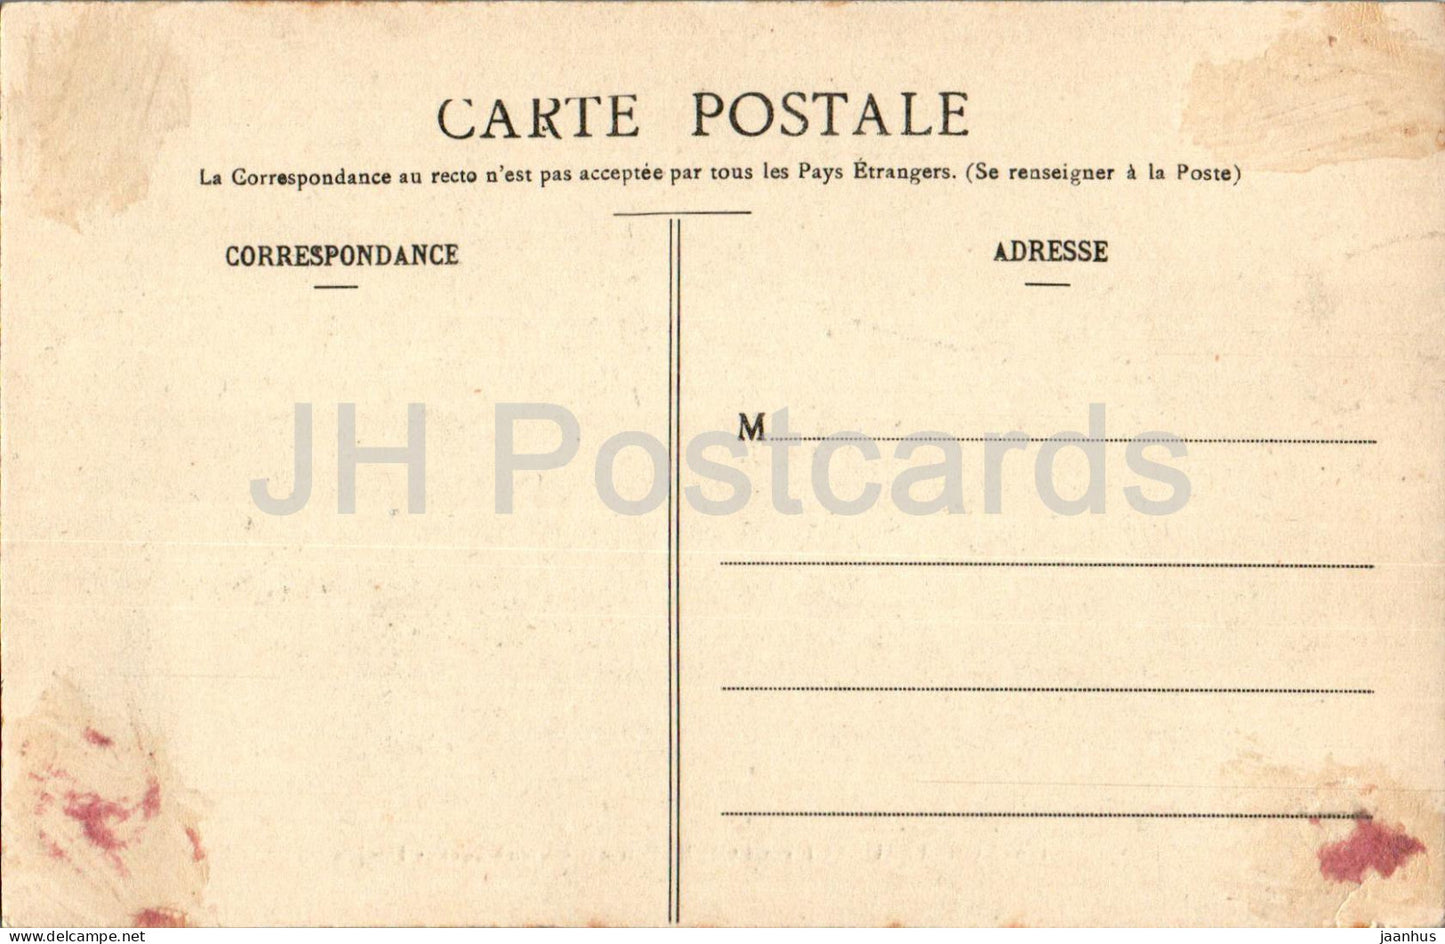 Chateauneuf sur Loire - Vieux Pont et Donjon - 160 - carte postale ancienne - France - occasion 